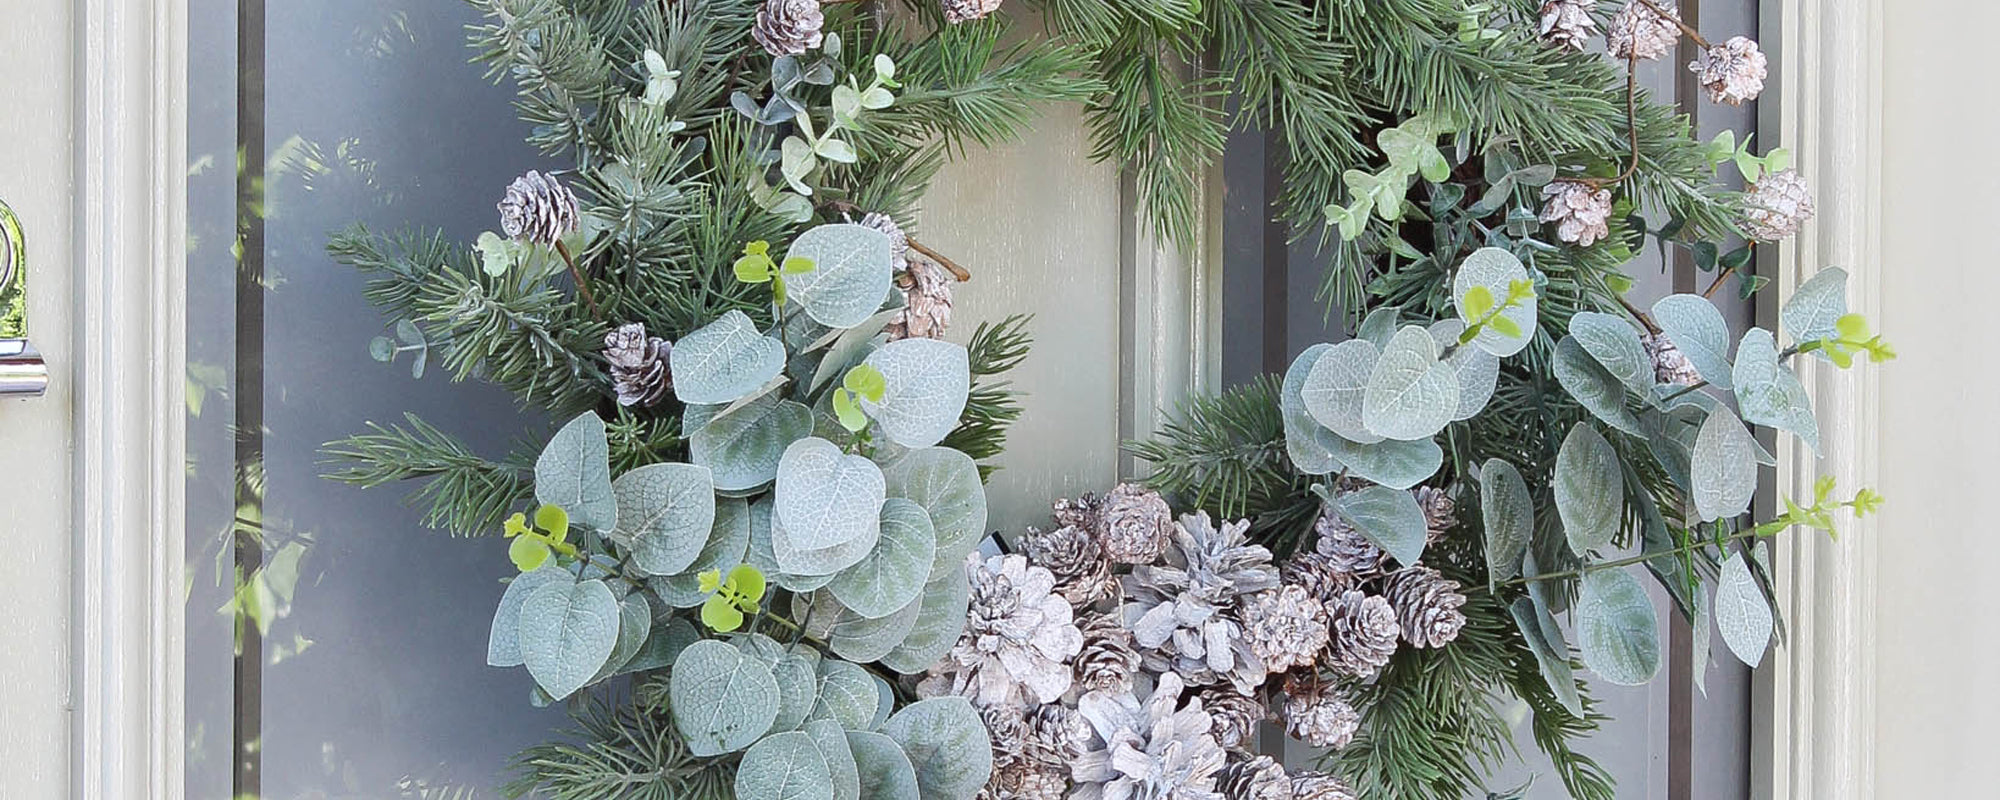 eucalyptus and pinecone wreath